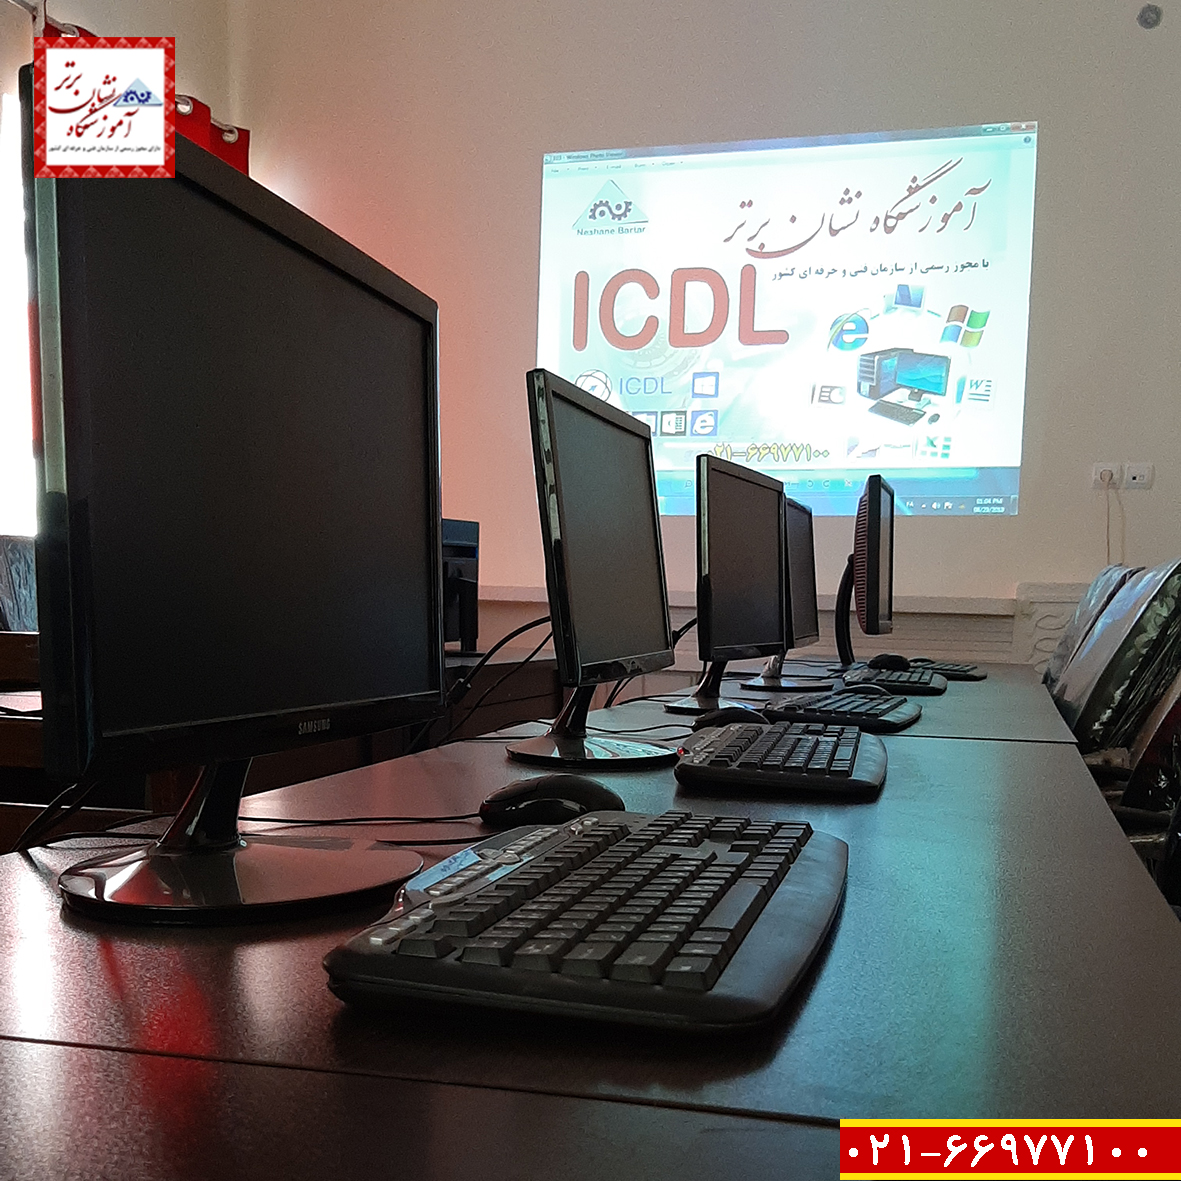 برگزاری دوره آموزشی مهارت های هفتگانه ICDL به صورت تضمینی در آموزشگاه نشان برتر (آموزش ICDL به صورت تضمینی در آموزشگاه نشان برتر)